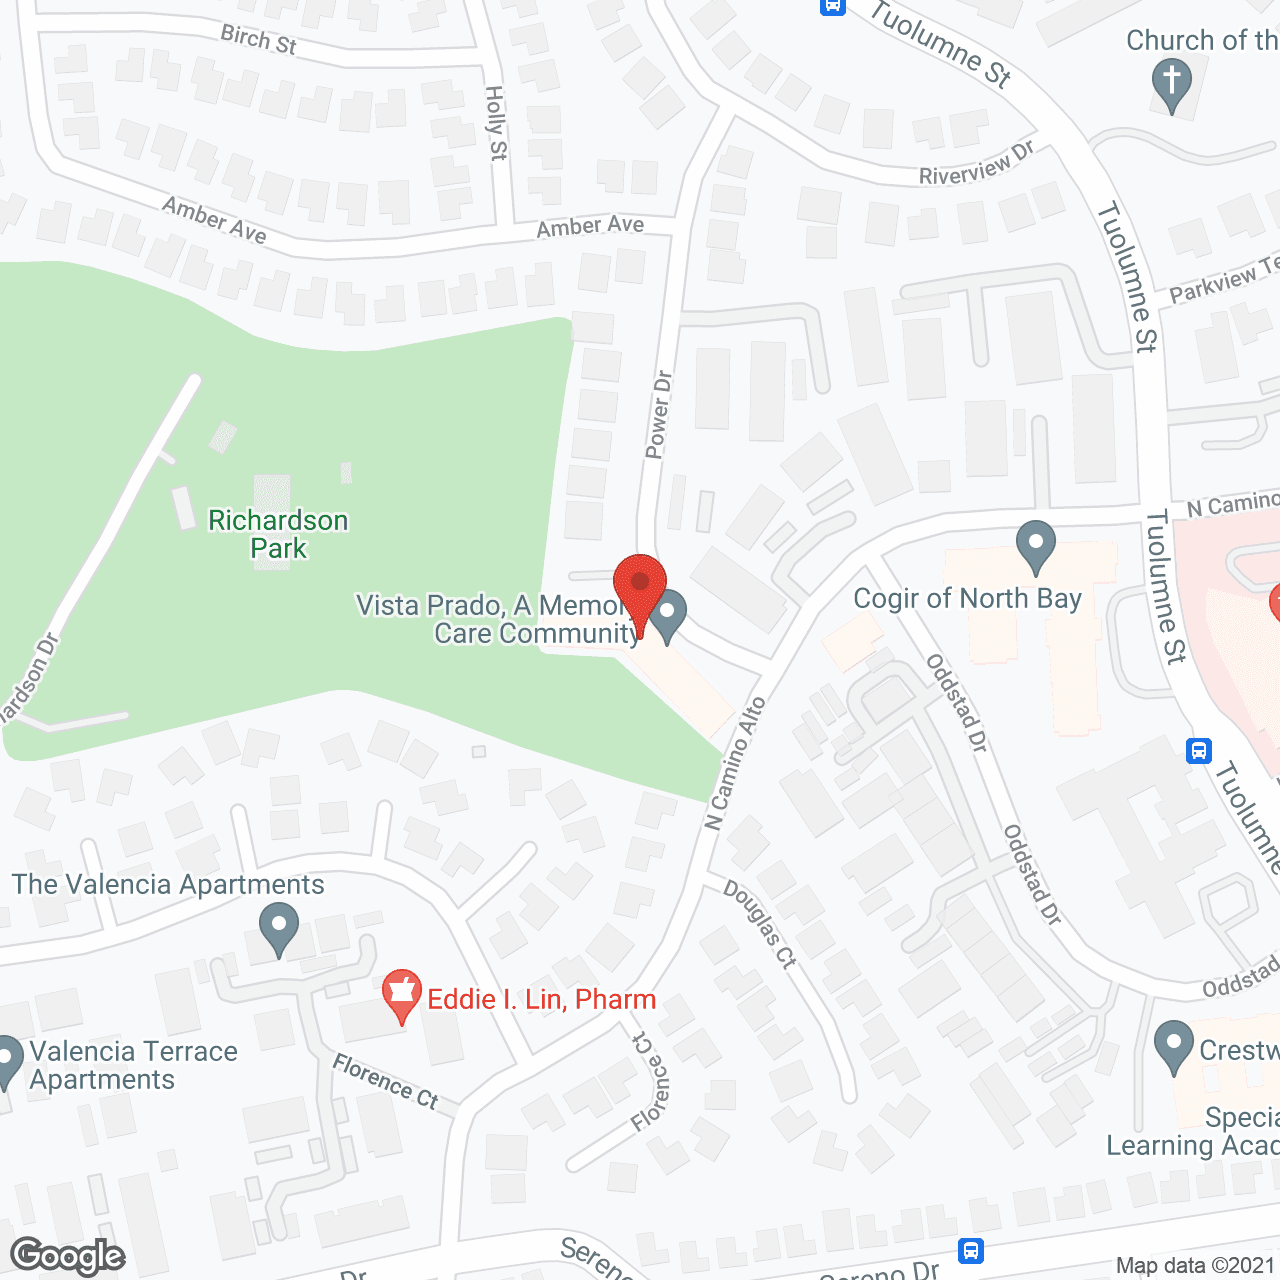 Vista Prado in google map